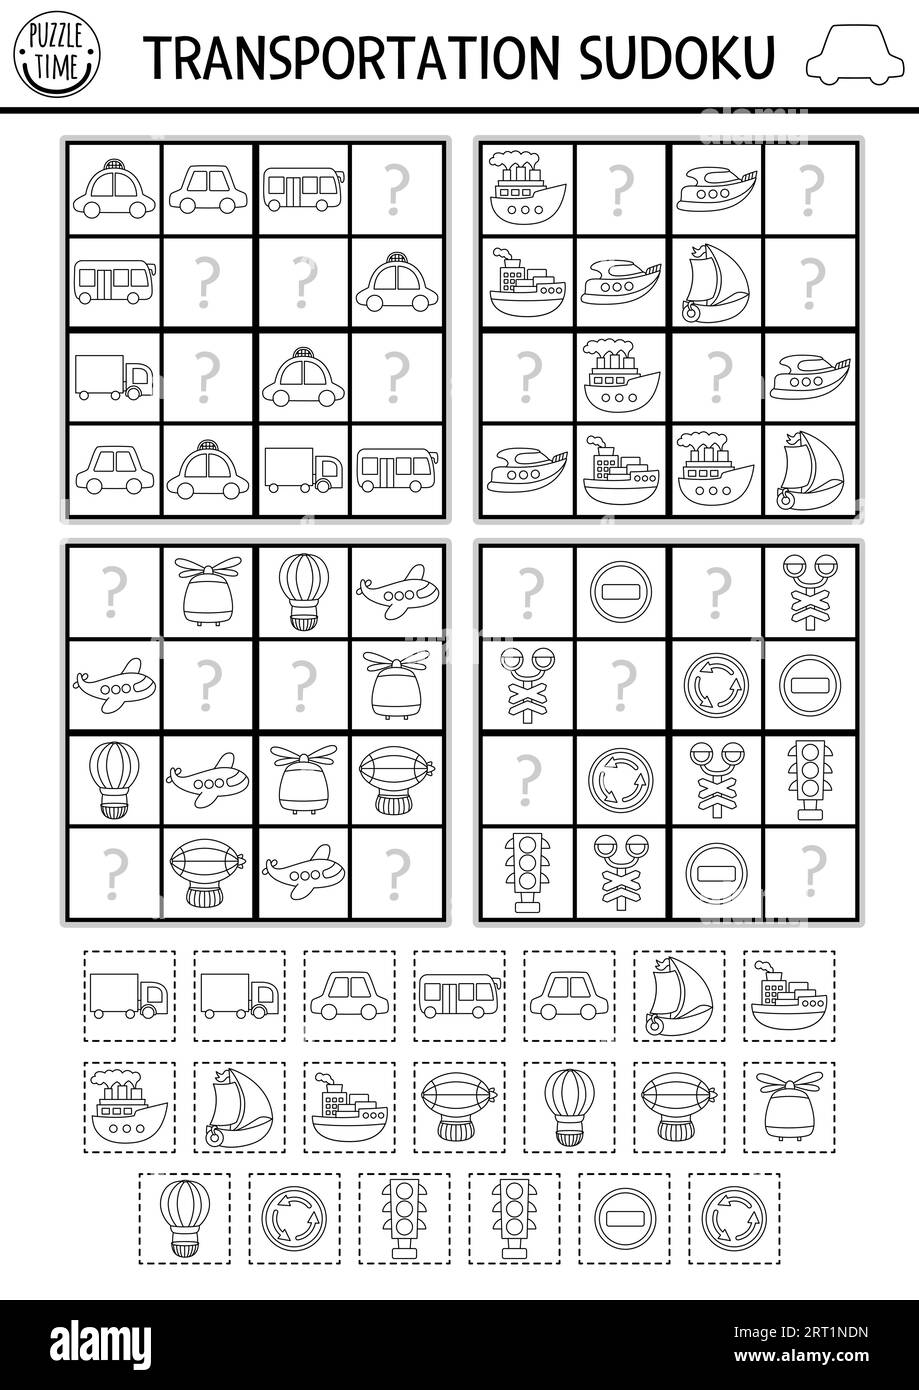 Vector Transport Sudoku schwarz-weiß Puzzle für Kinder. Einfaches Transport-Quiz mit Schnitt- und Leimelementen. Bildungsaktivität oder Ausmalseite wi Stock Vektor